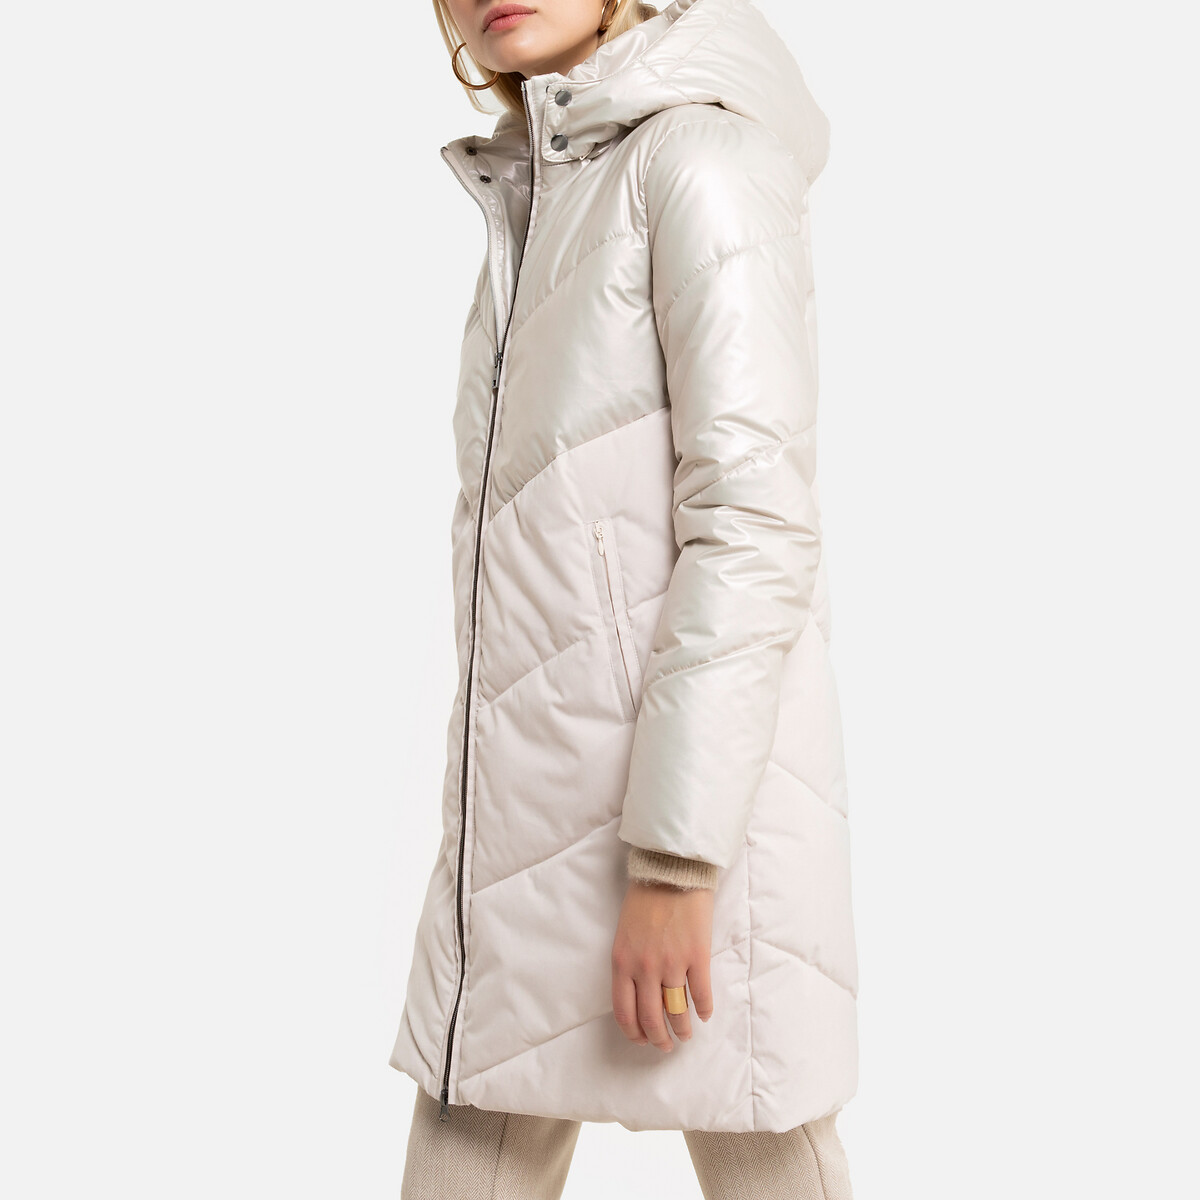 Куртка LaRedoute Стеганая средней длины с капюшоном зимняя модель 40 (FR) - 46 (RUS) бежевый, размер 40 (FR) - 46 (RUS) Стеганая средней длины с капюшоном зимняя модель 40 (FR) - 46 (RUS) бежевый - фото 1